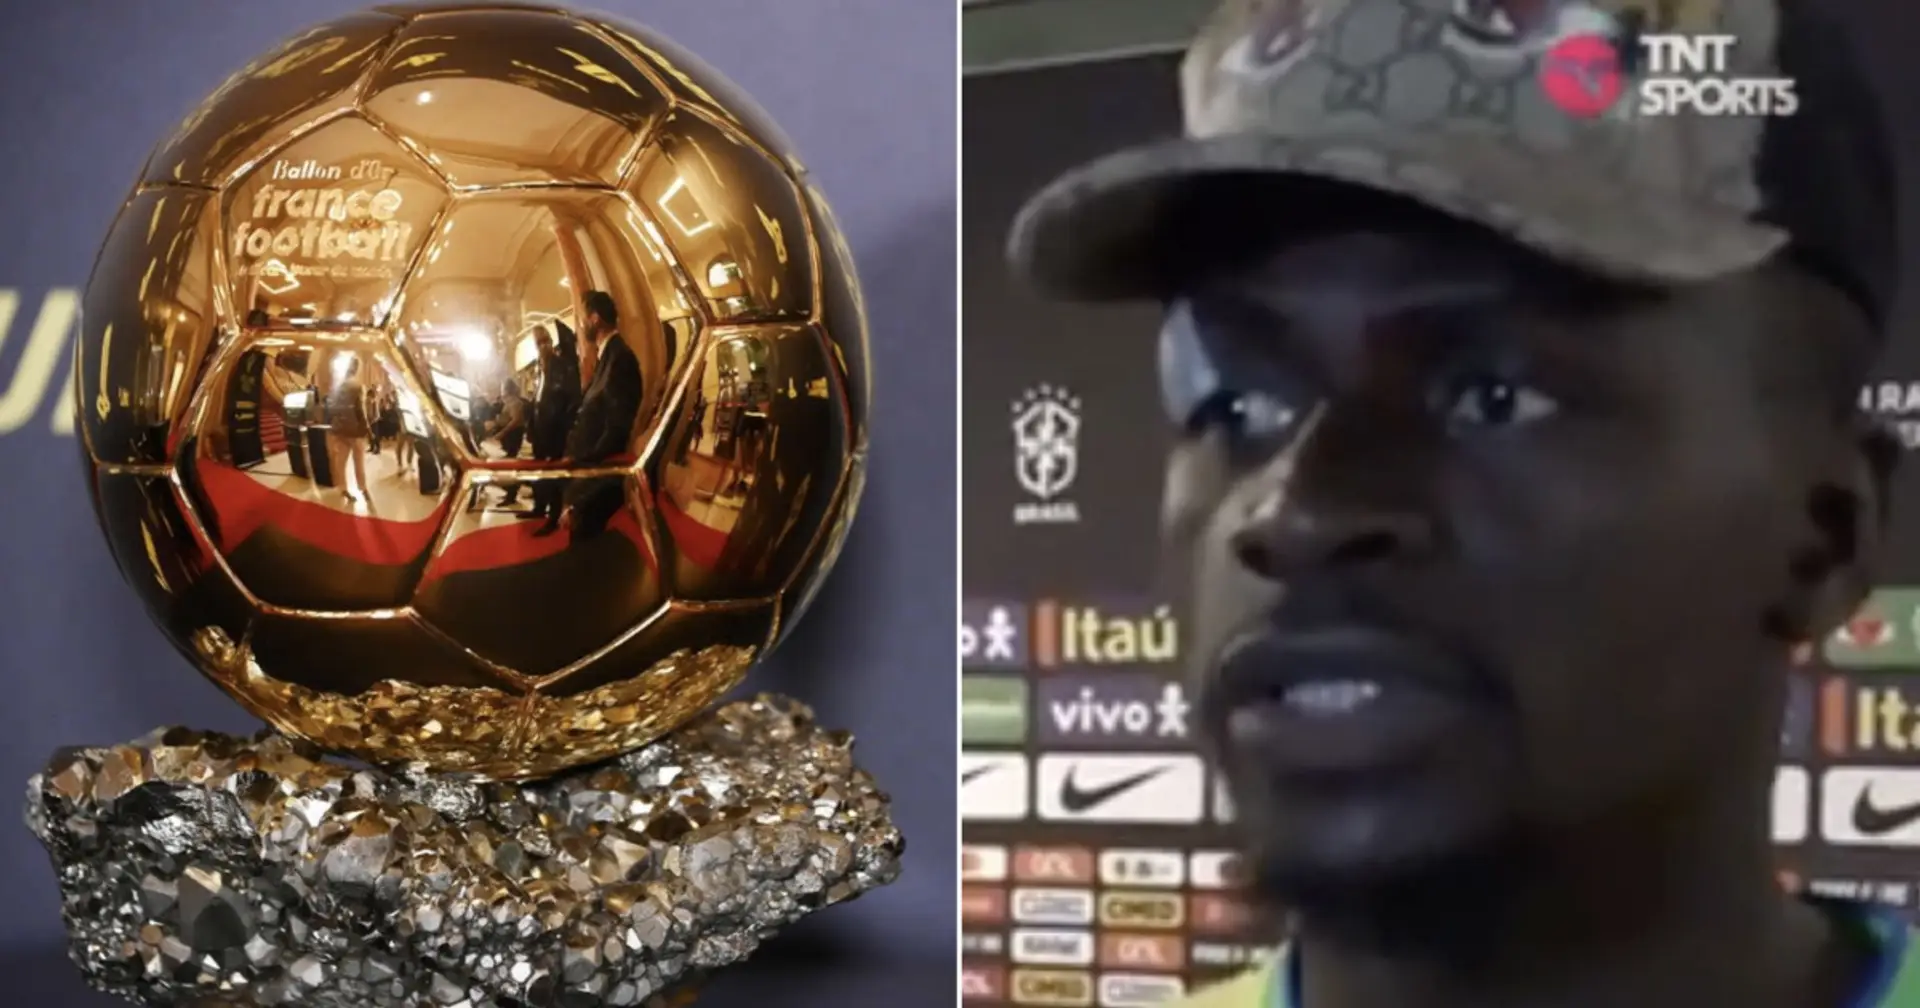 "Je pense qu'il va gagner": Sadio Mané nomme le joueur du Real Madrid le mieux placé qui remportera le Ballon d'Or